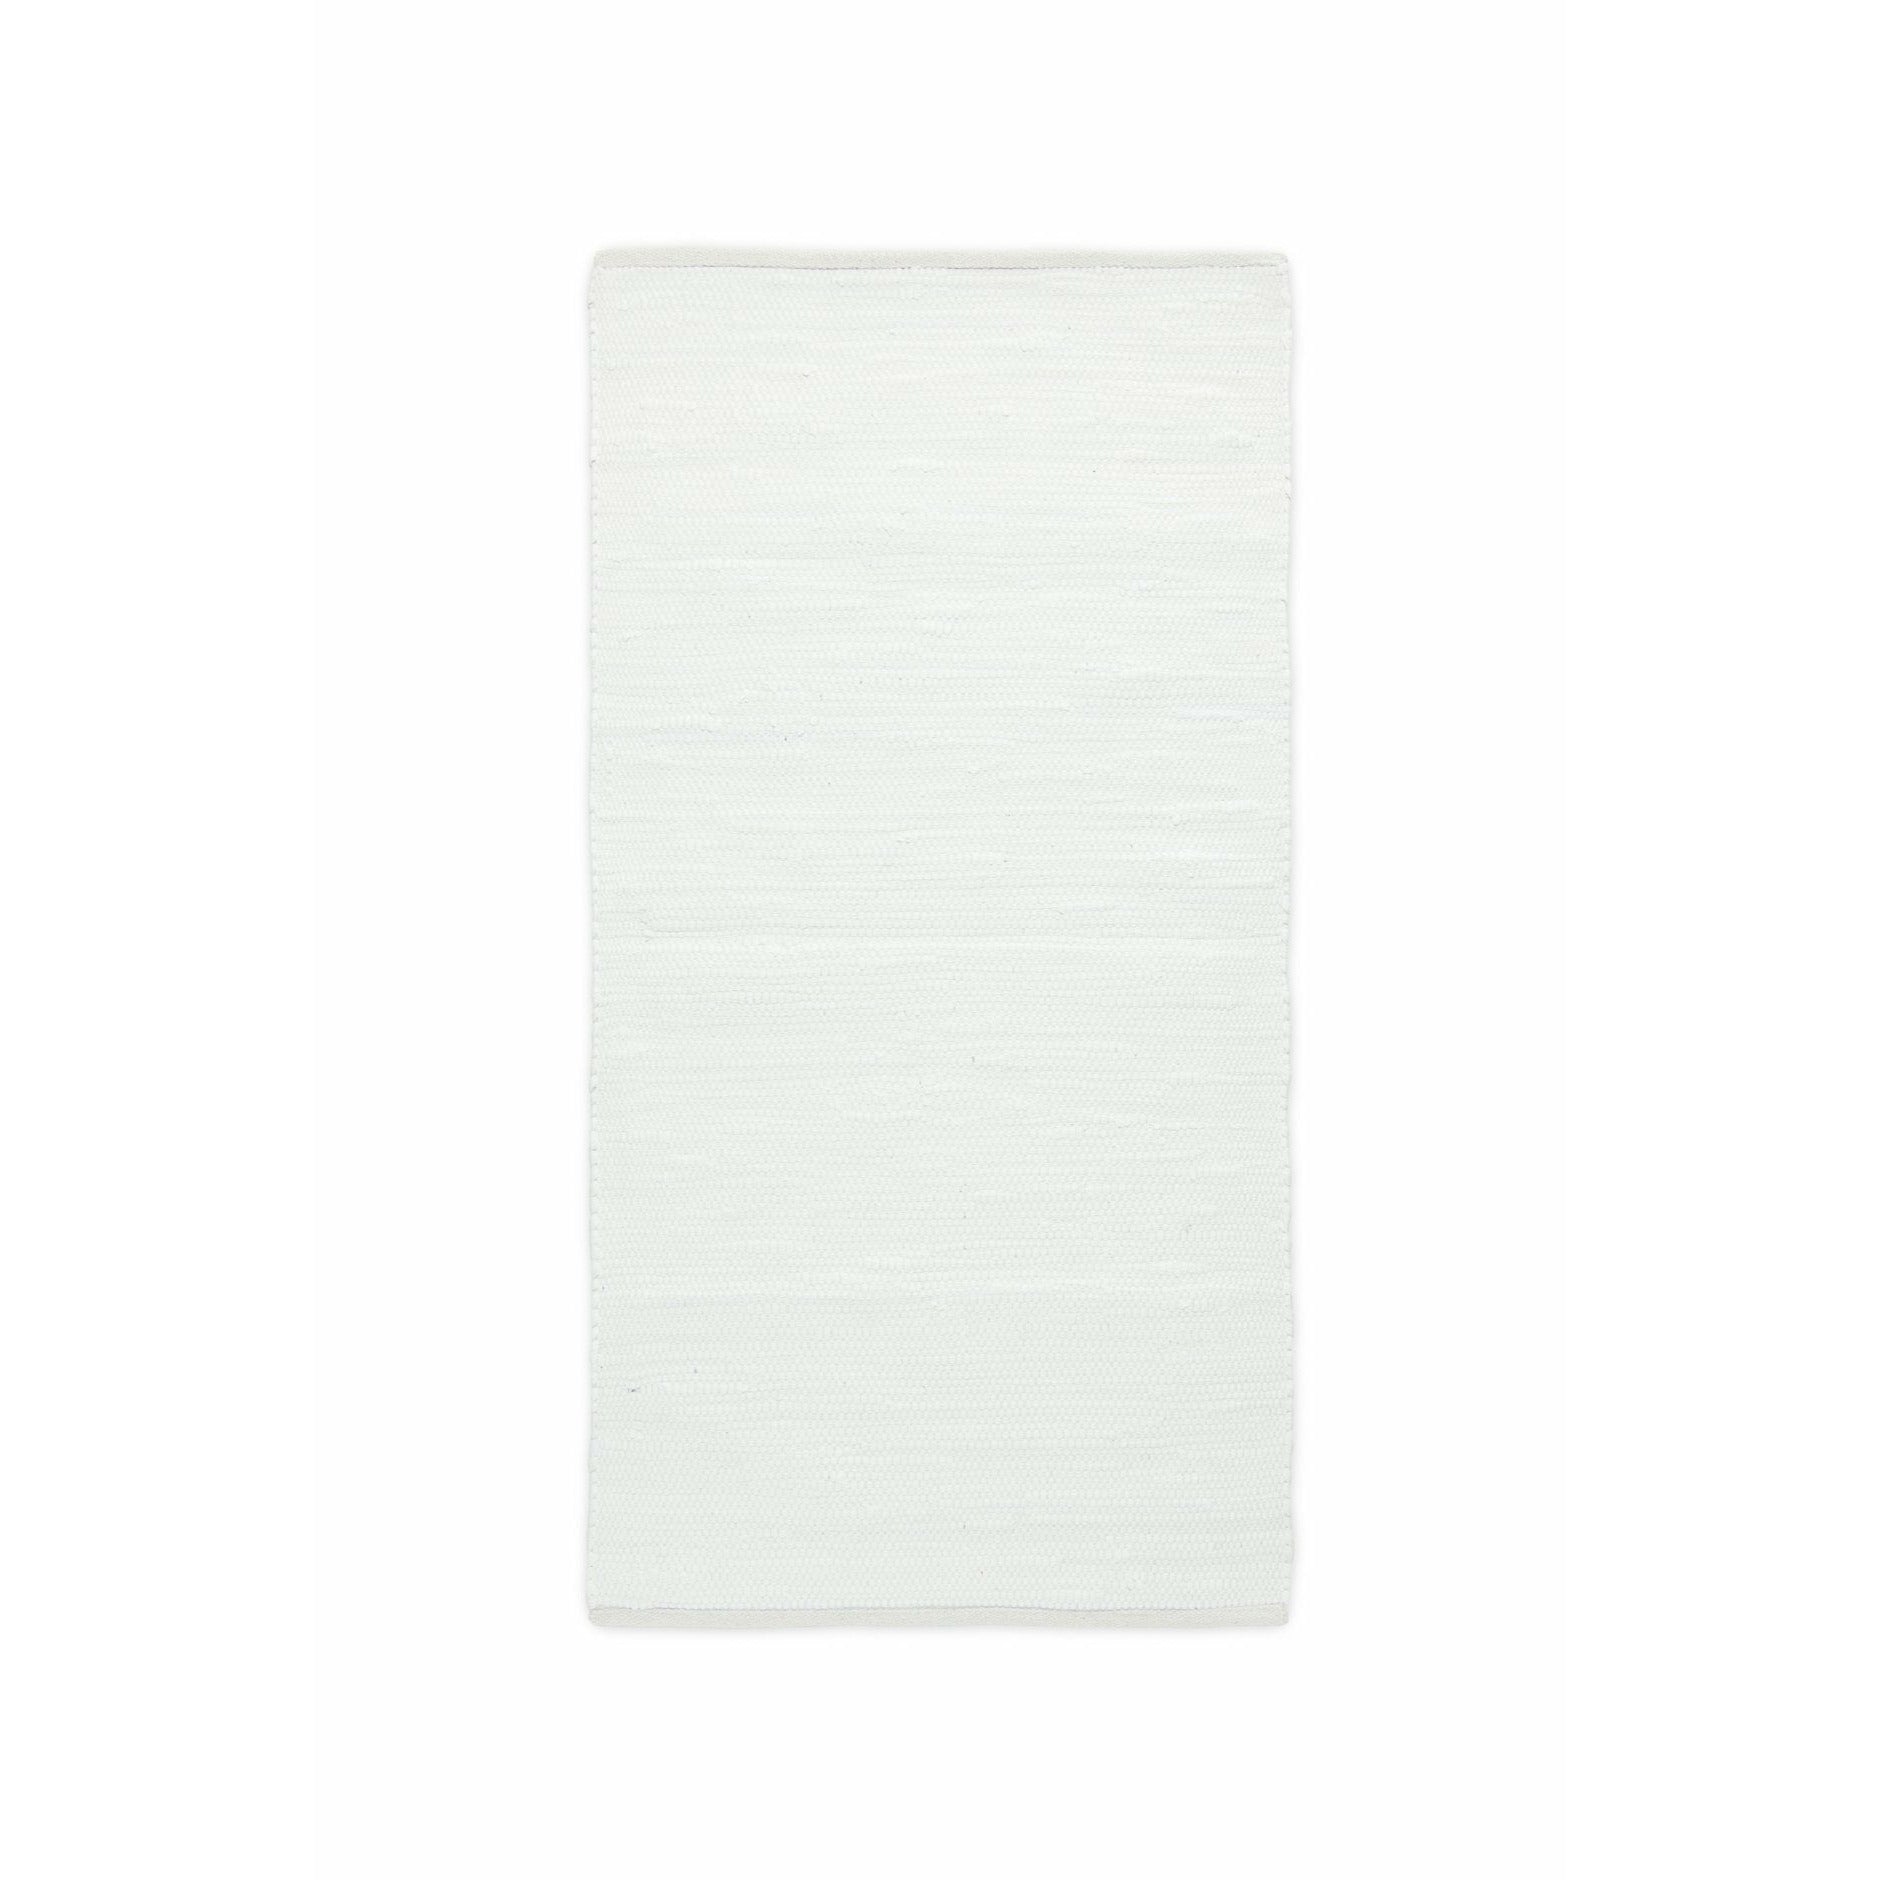 Rug Solid Bomullsmatta vit, 65 x 135 cm